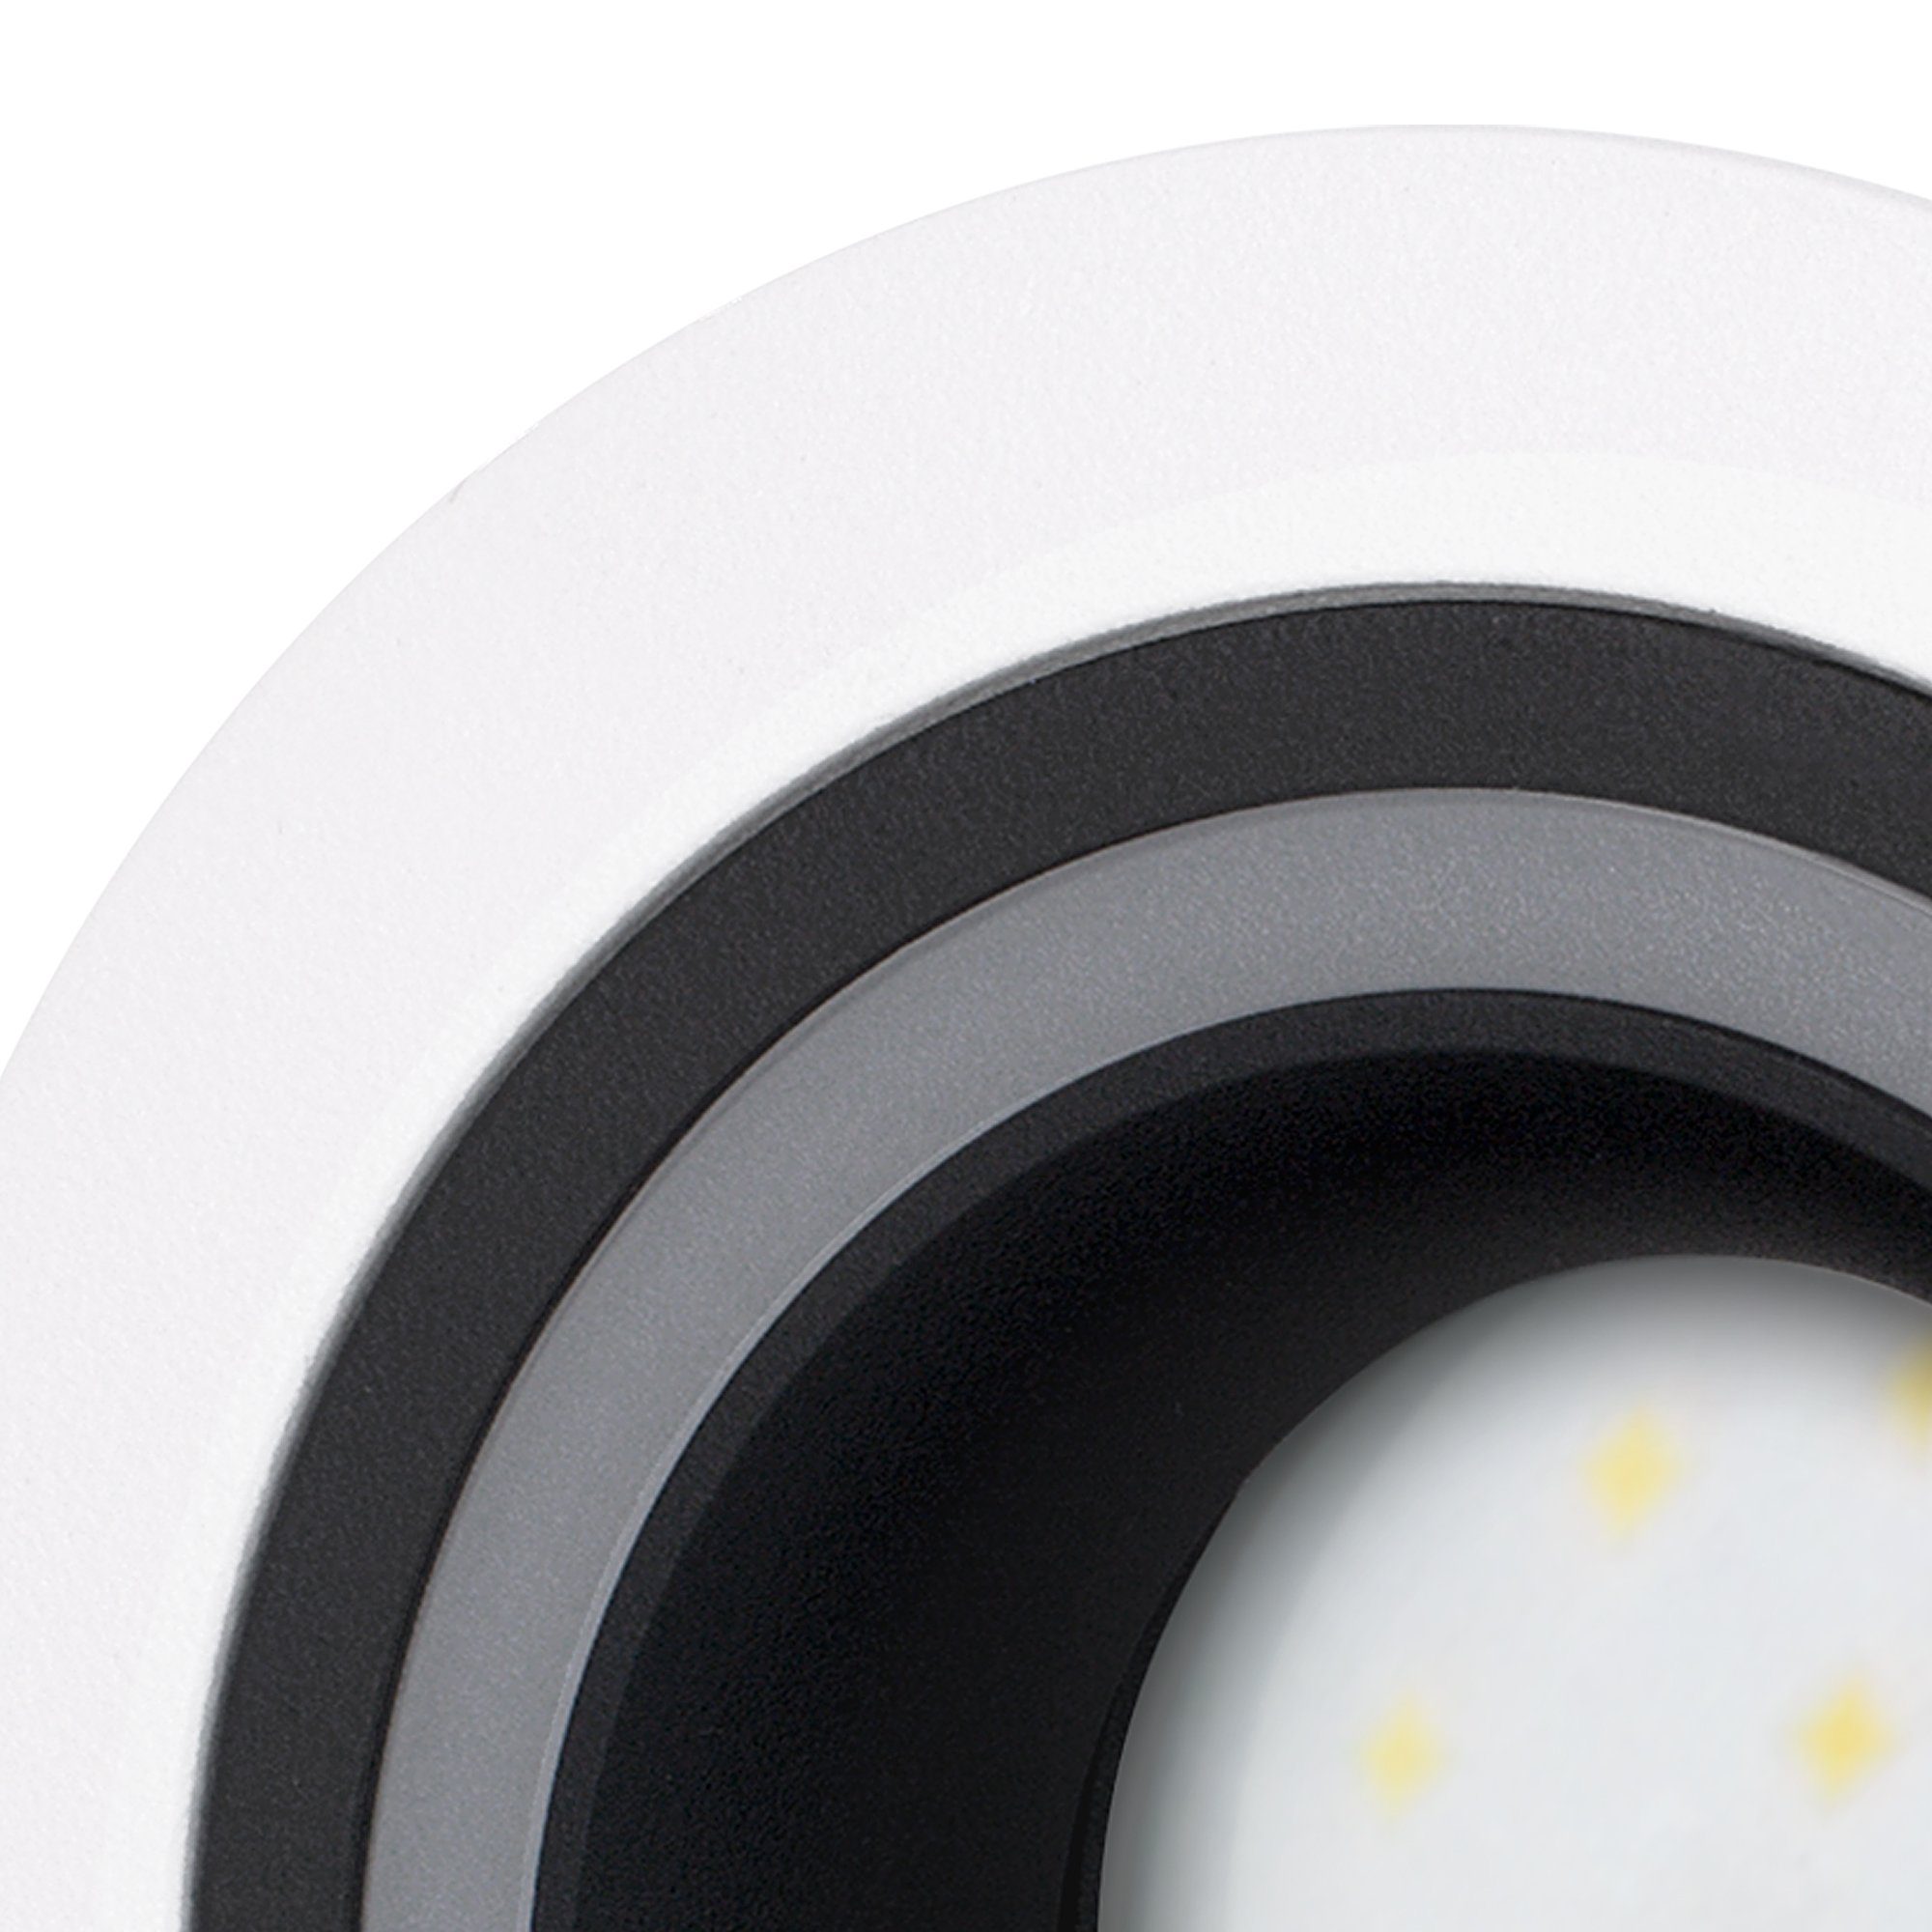 Einbaustrahler Leuchtmittel Design LED Neutralweiß schwarz LED Einbauspot GU10 Matapo weiss 5W, mit SSC-LUXon